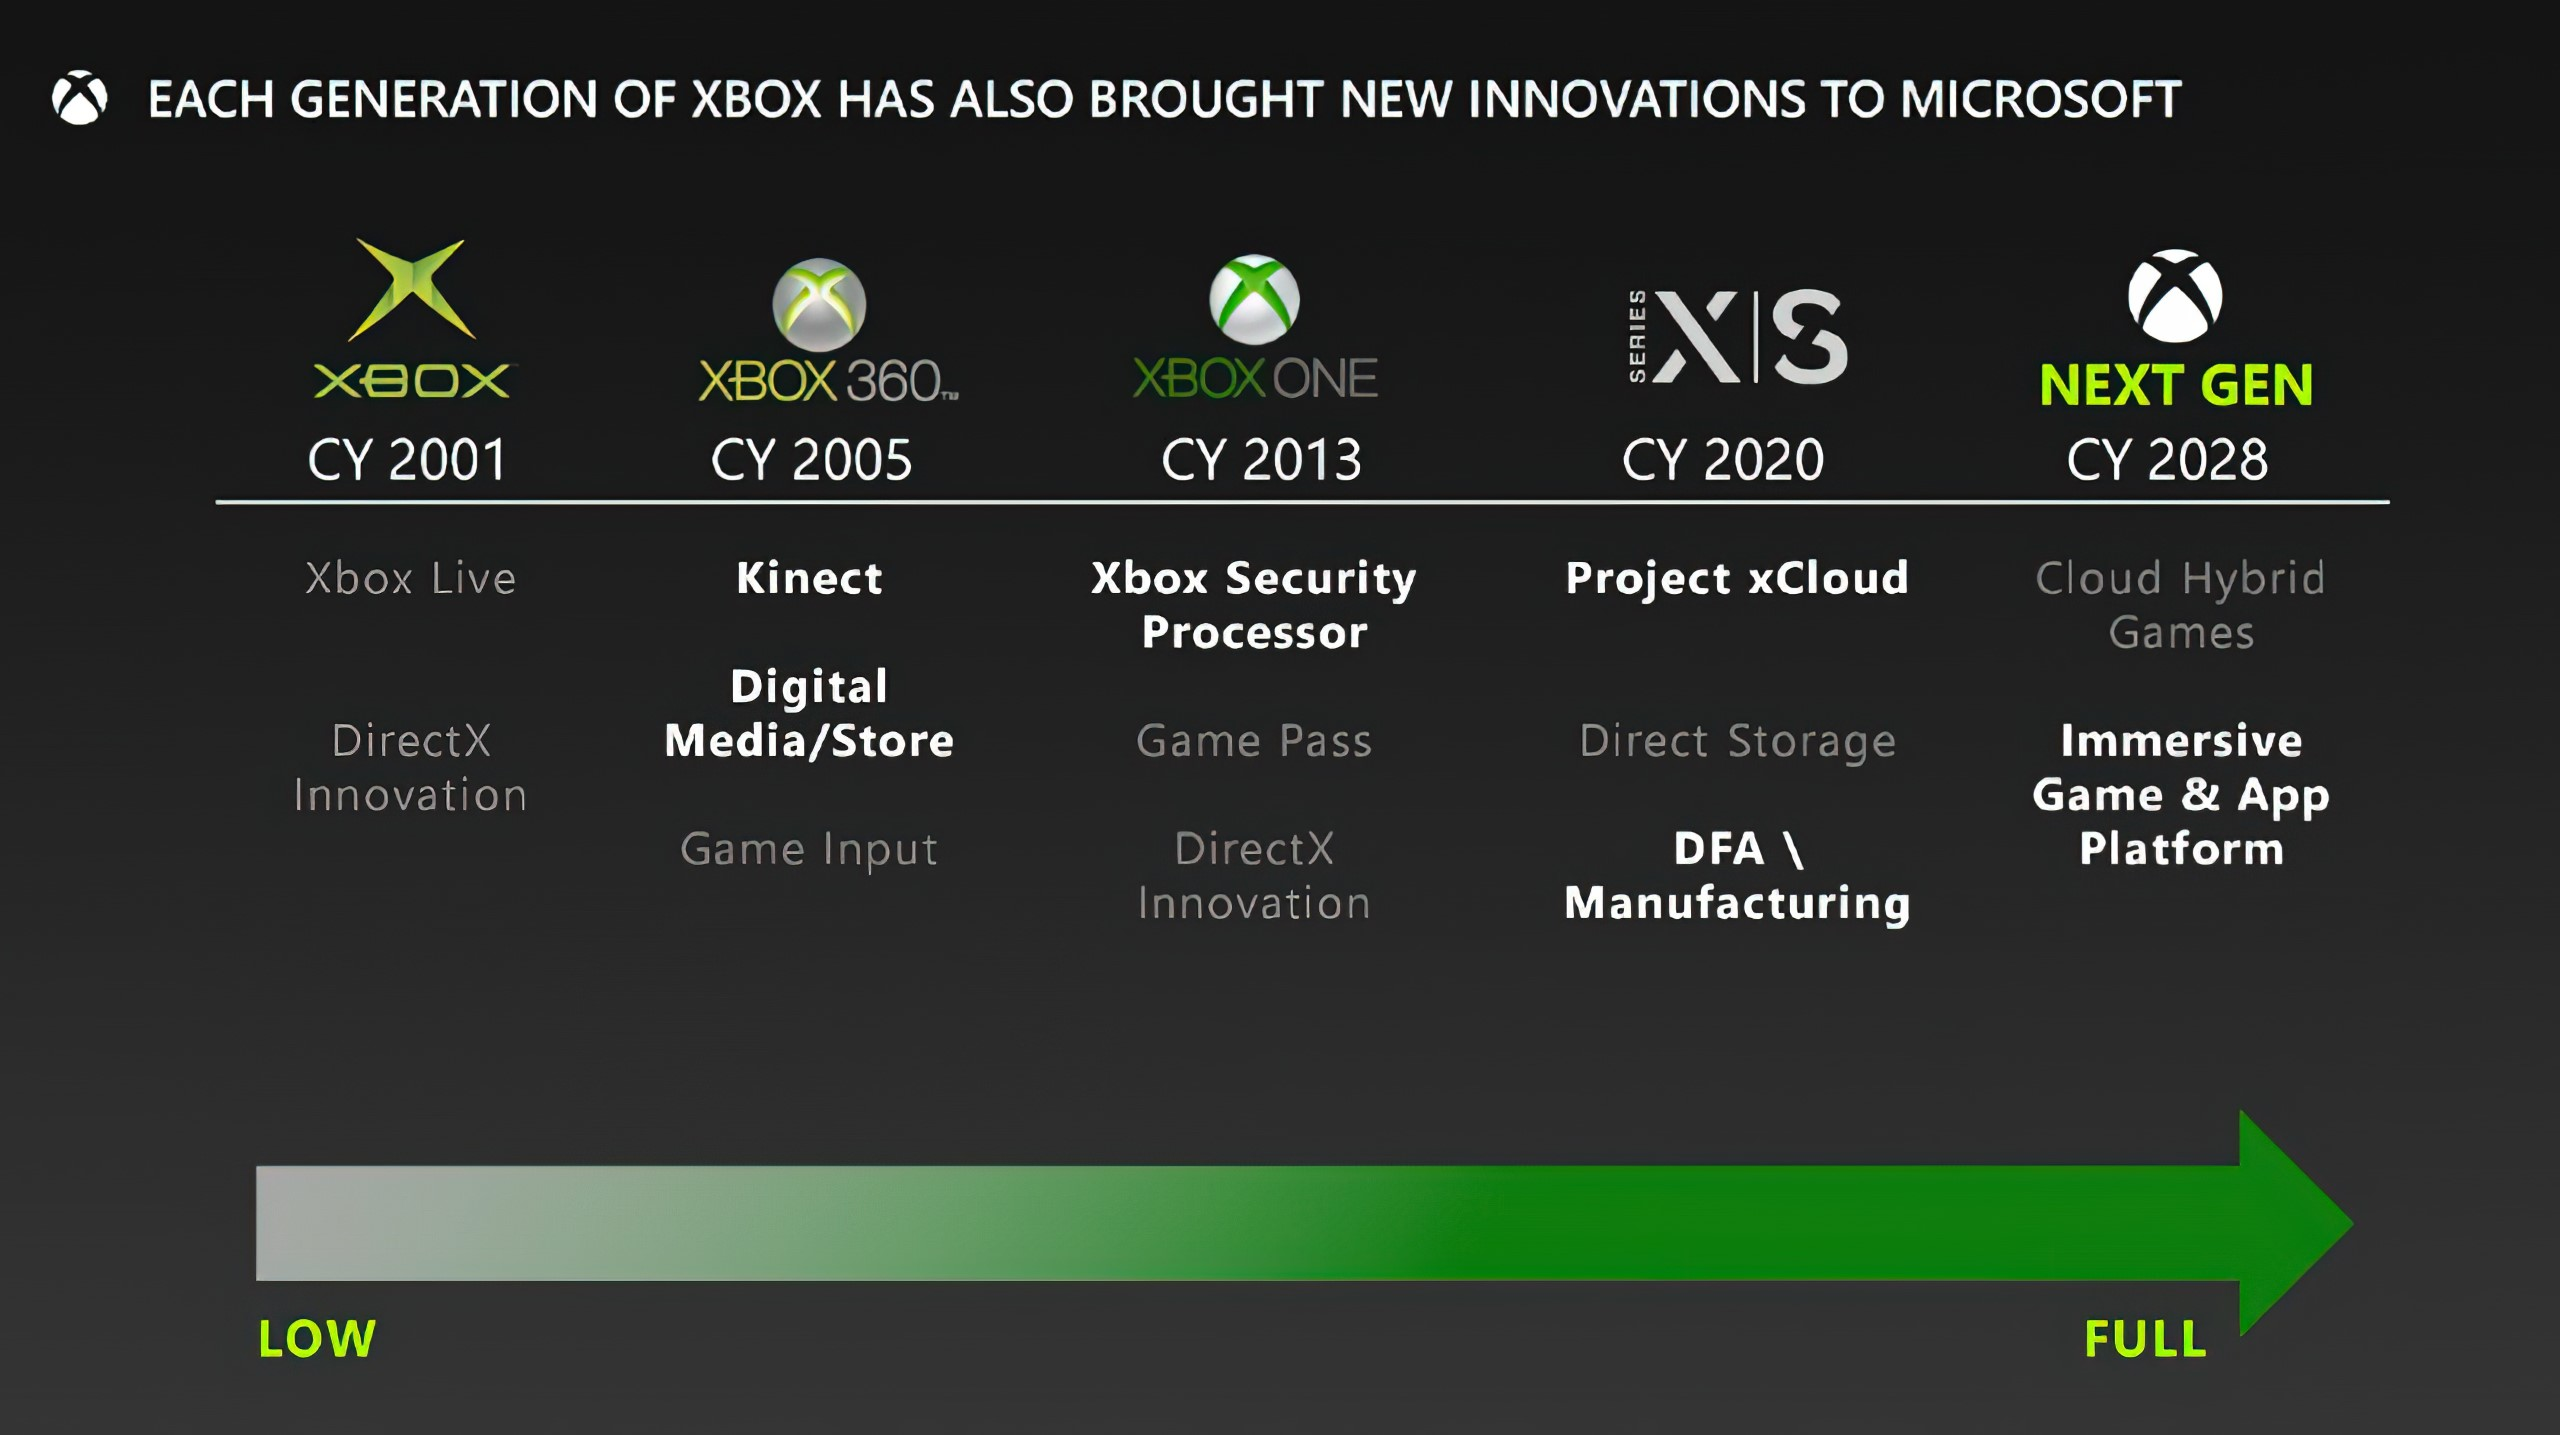 ข้อมูลภายในของ Xbox จาก FTC ยังคงถูกเปิดเผยออกมาต่อเนื่อง ล่าสุดก็เป็นแผนการณ์พัฒนาคอนโซลเจนถัดไปของ Xbox ที่จะเปิดตัวราวปี 2028 โดย Microsoft วางตัวเป็นแพลตฟอร์มเล่นเกมแบบไฮบริดระหว่างคอนโซลและคลาวด์